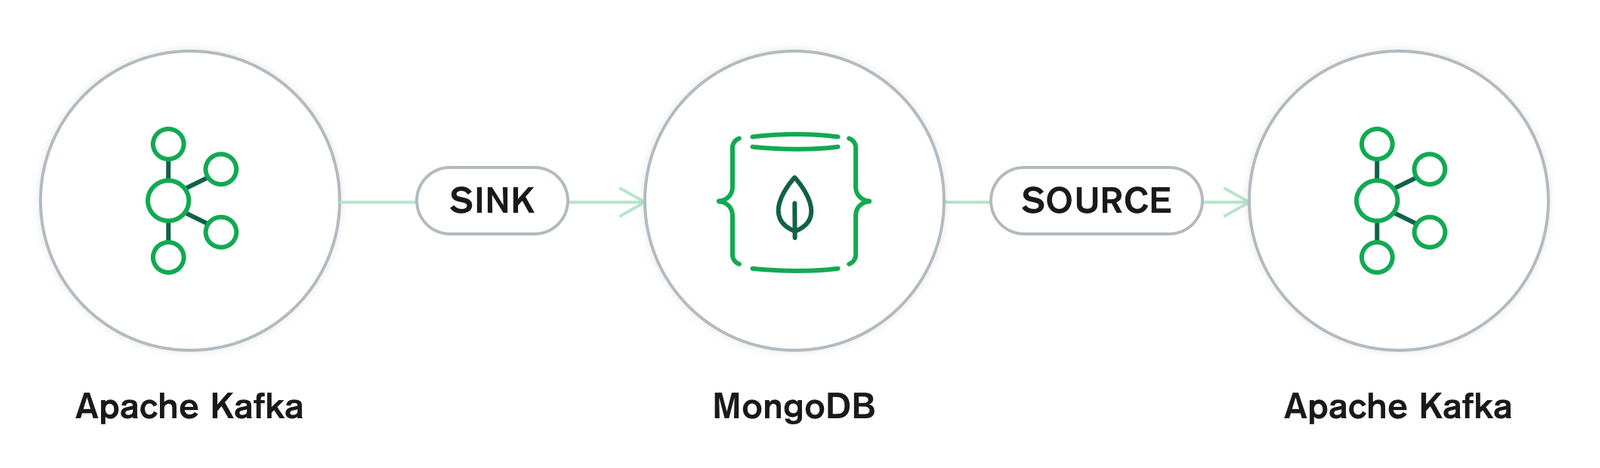 MongoDB Connector for Apache Kafka version 1.2!